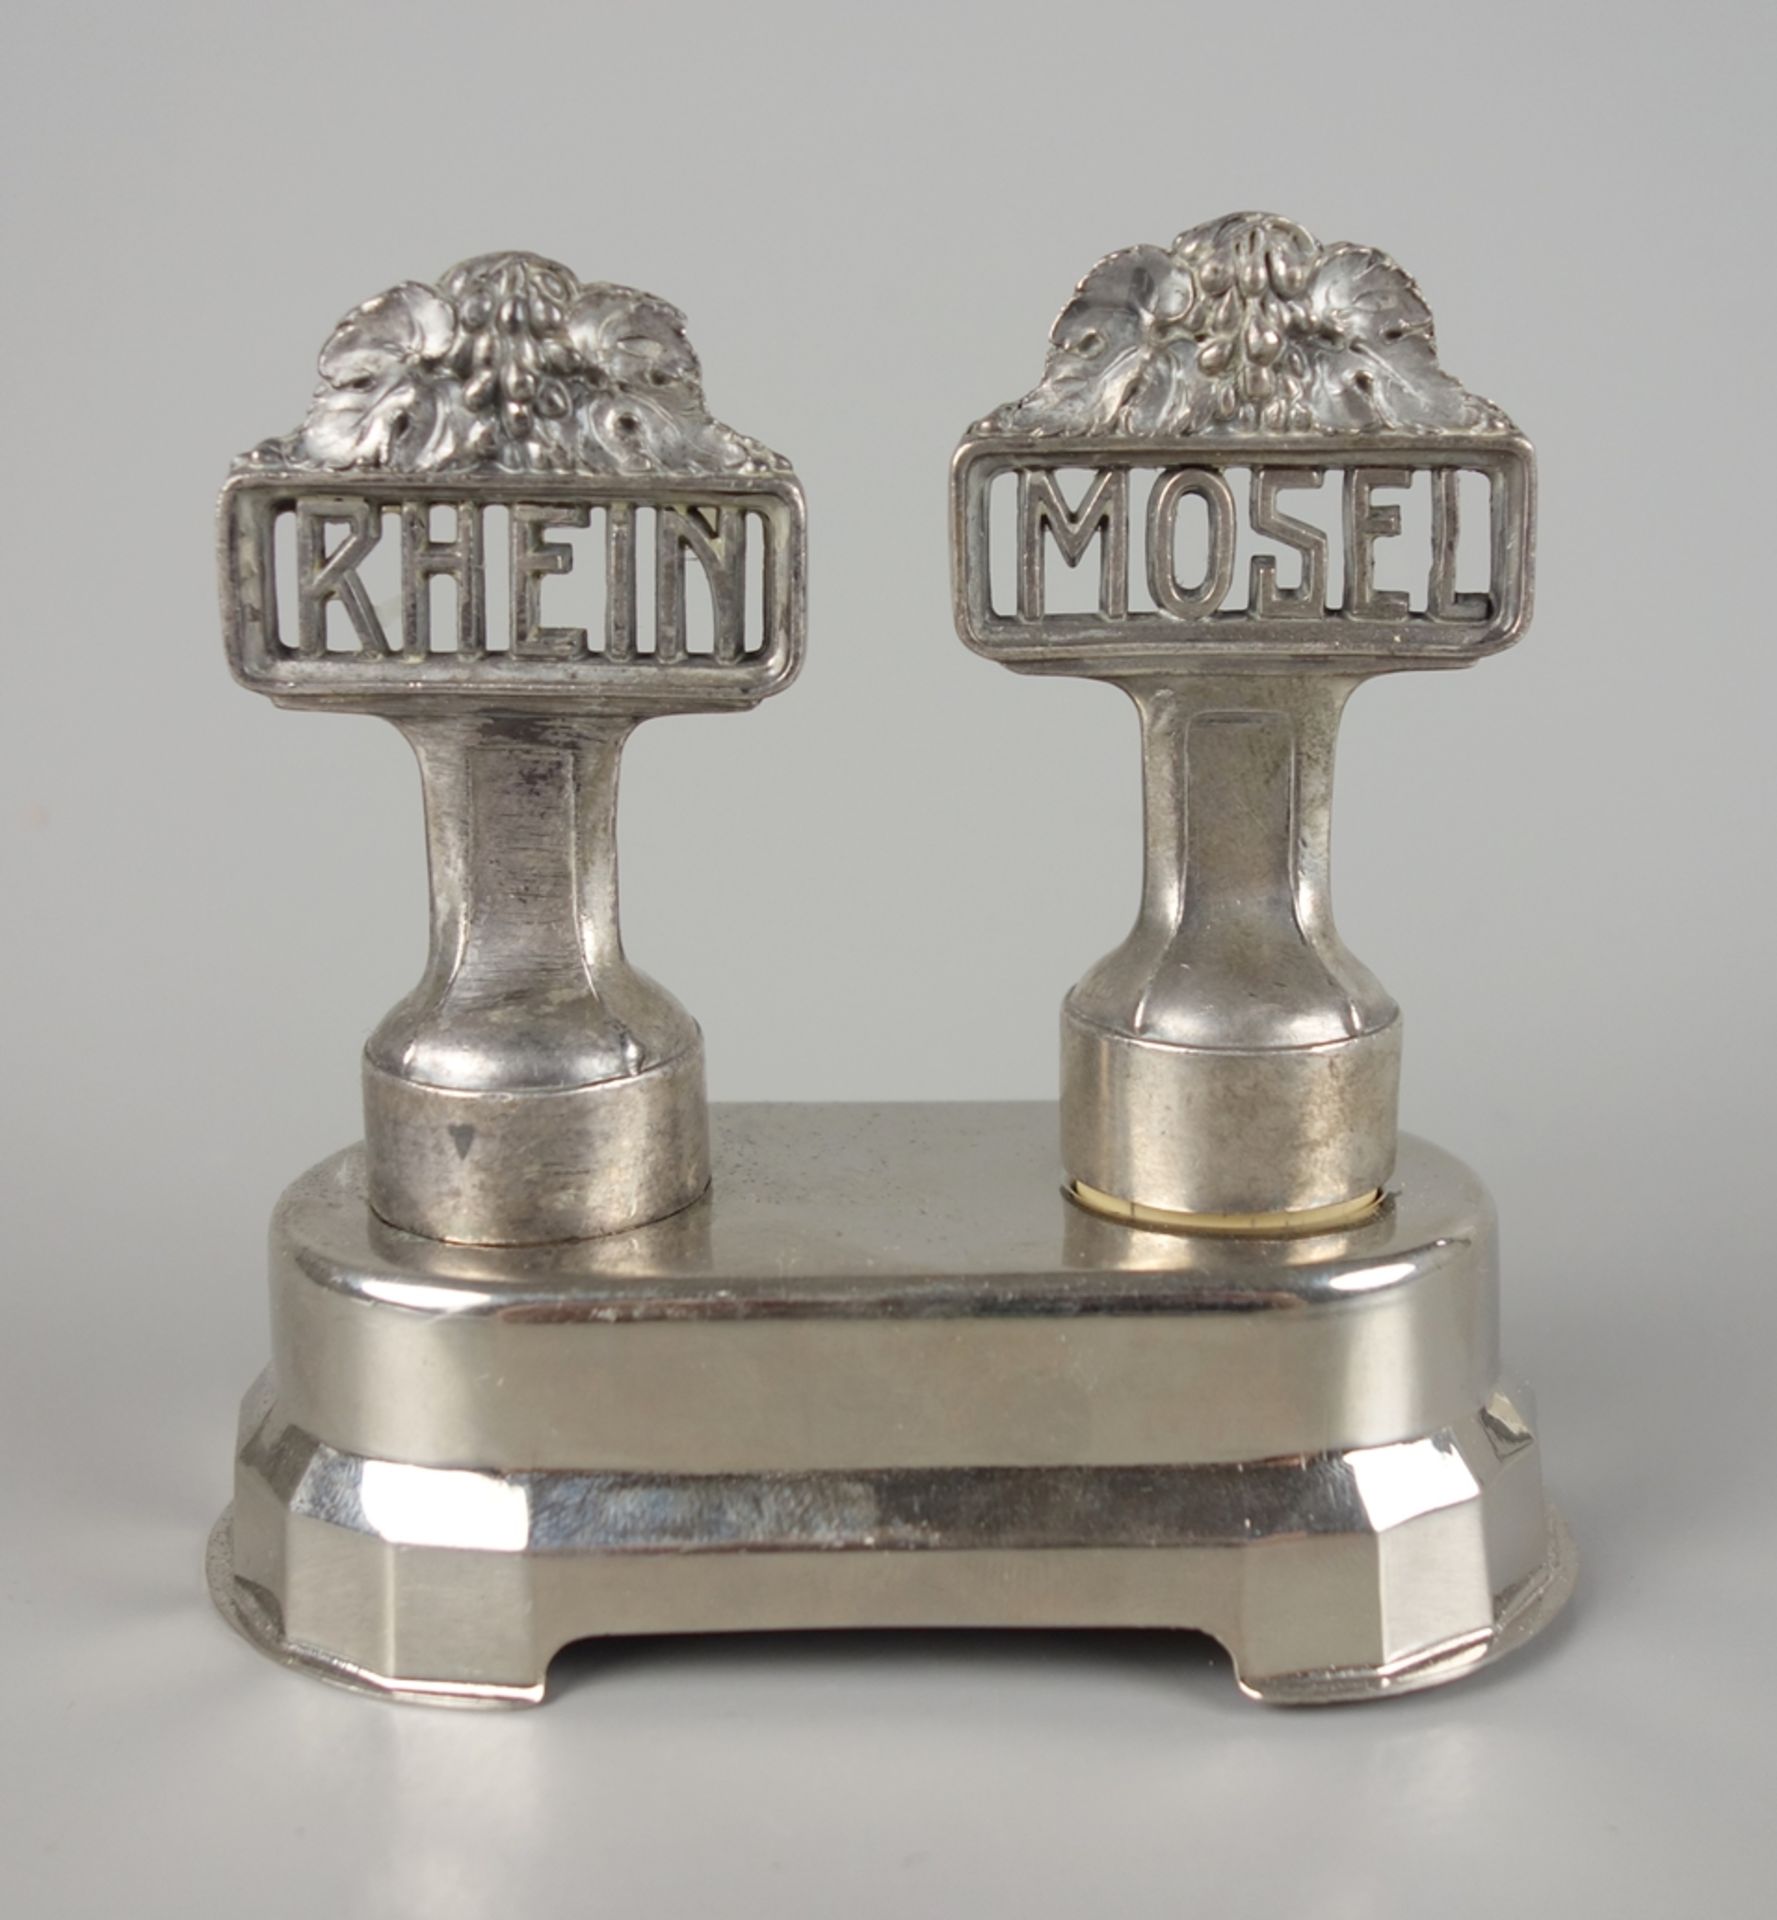 Pair of decorative corks "Rhein - Mosel", Orivit, around 1900, with stand